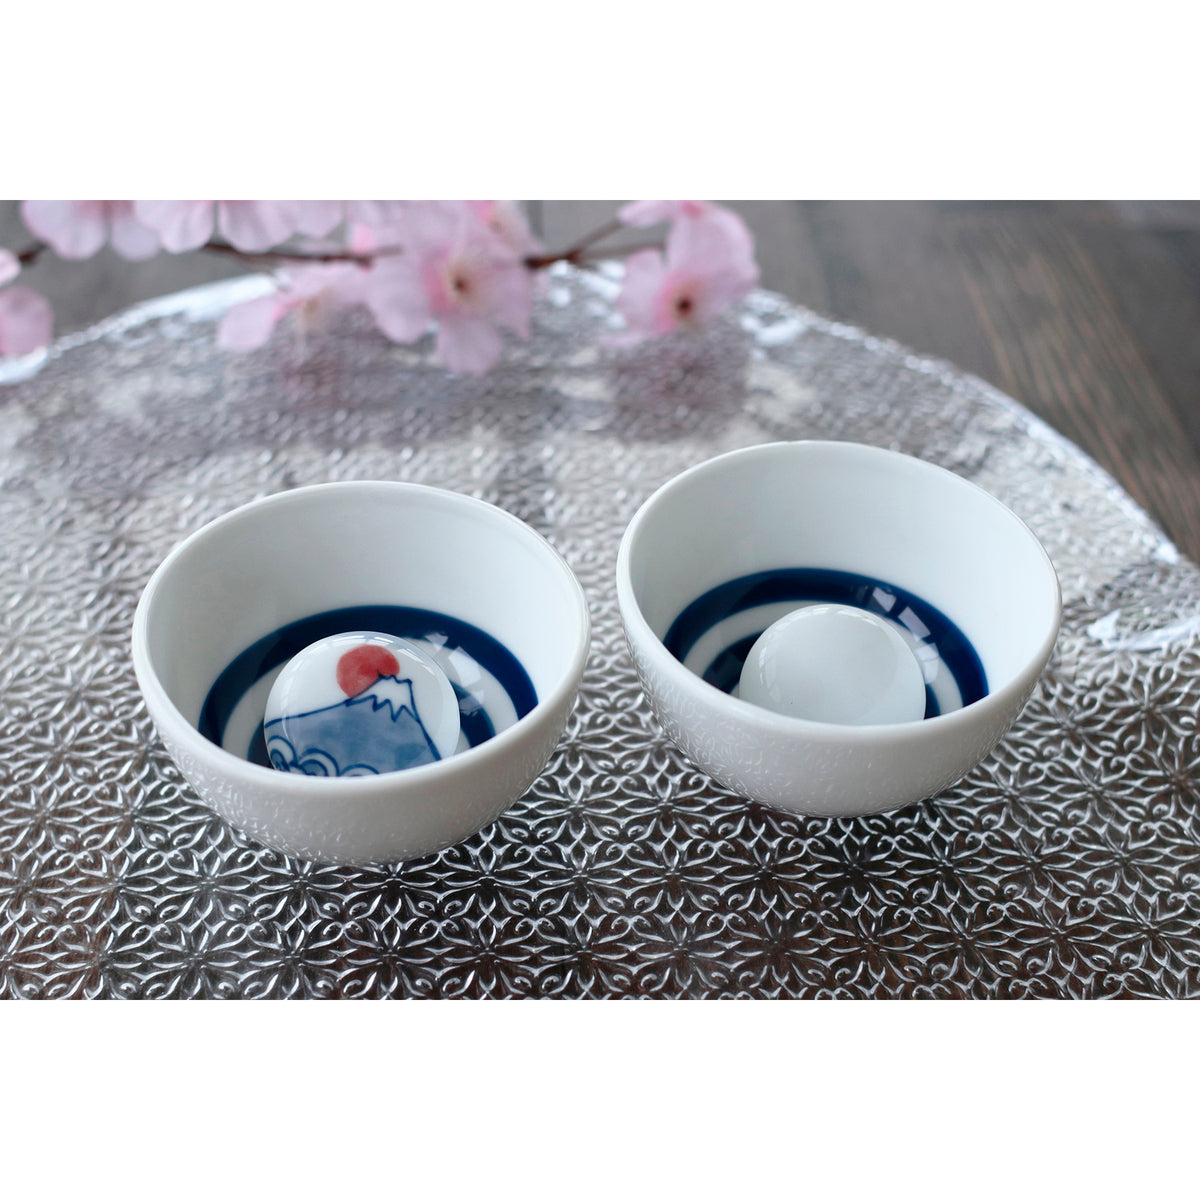 【預購】日本製 Marumo Takagi 陶瓷冷感櫻花 風鈴聲清酒杯 - Cnjpkitchen ❤️ 🇯🇵日本廚具 家居生活雜貨店